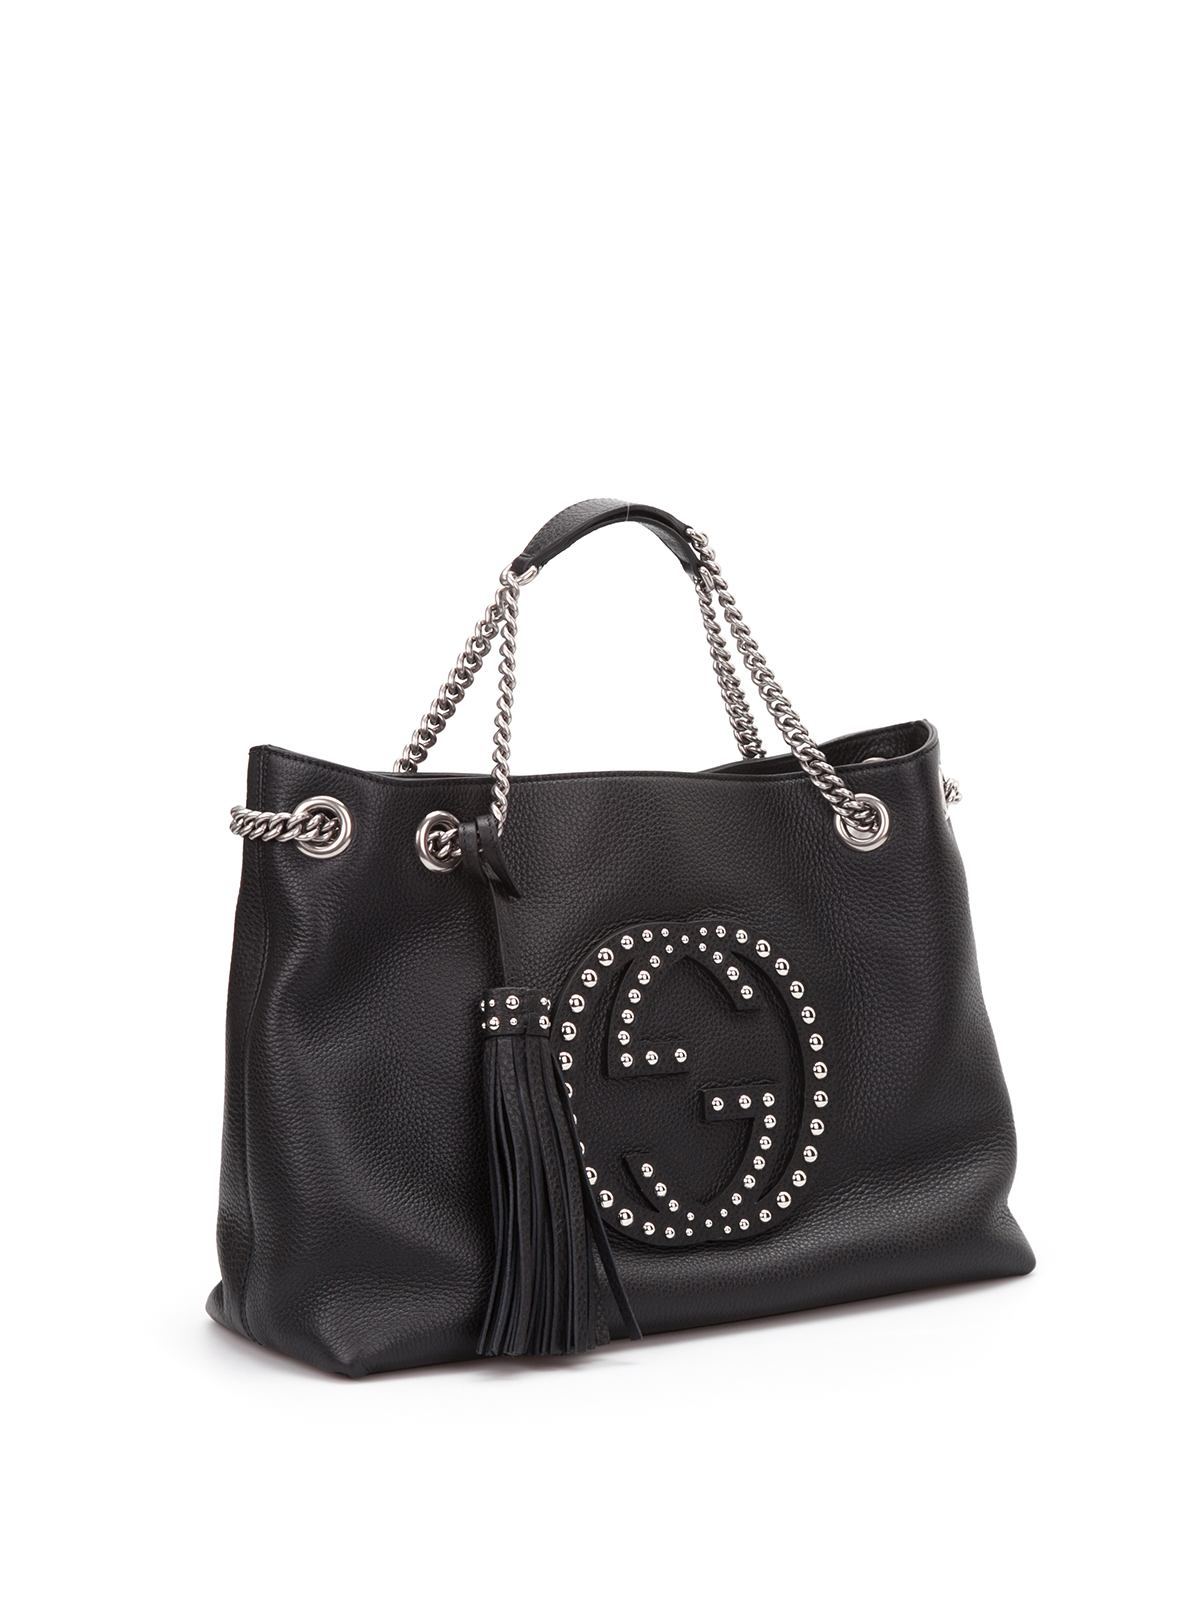 Gucci - Soho studded leather shoulder bag - totes bags - 308982 A88EN 1000